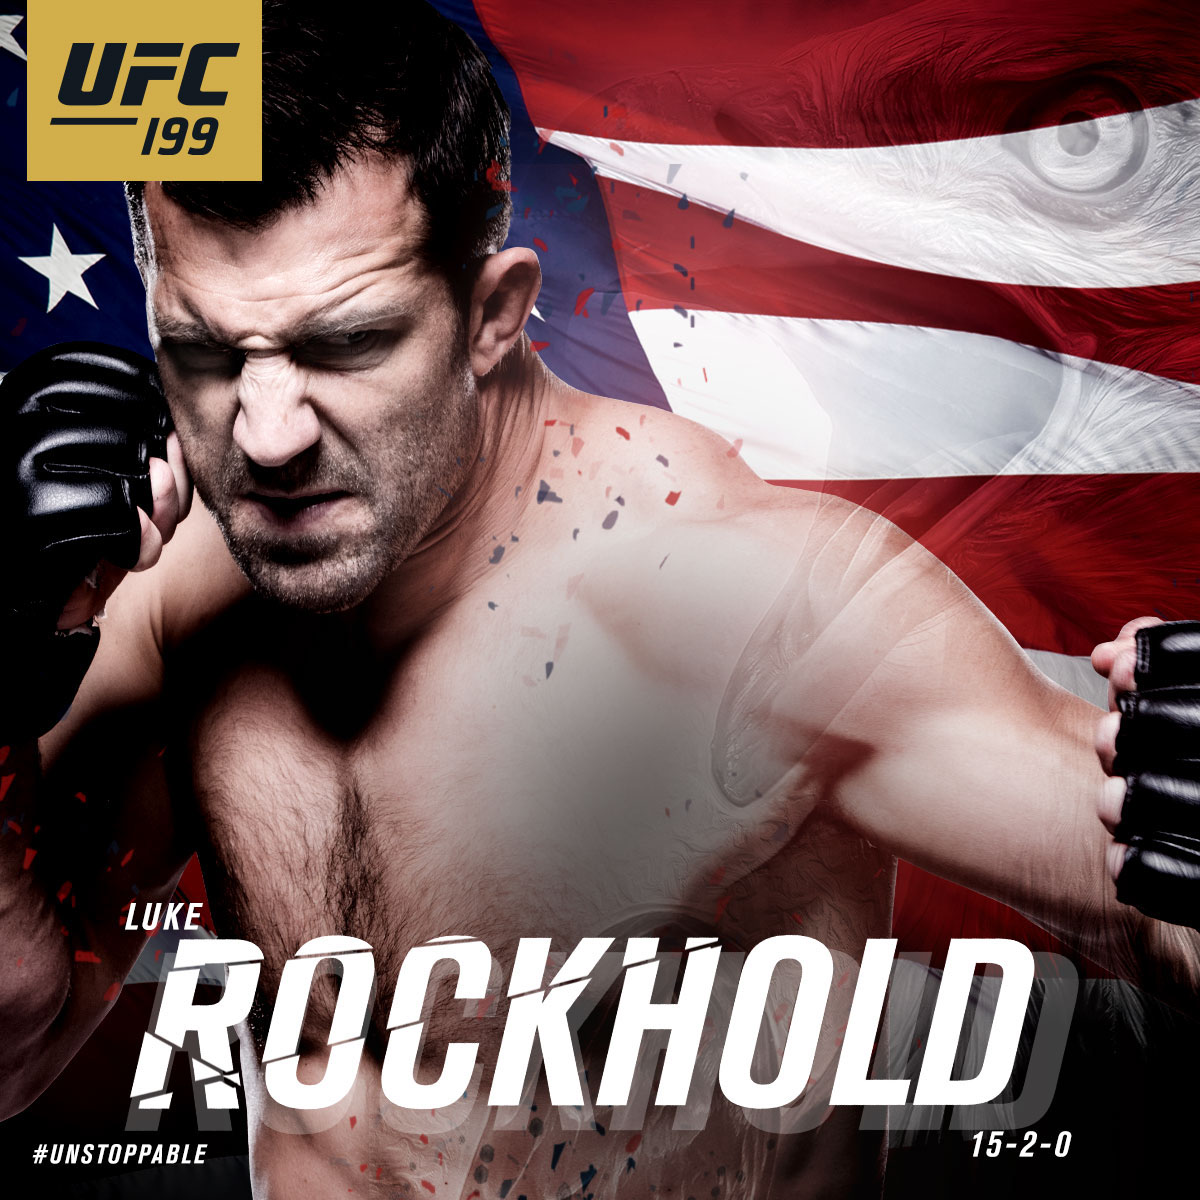 UFC MMA unstoppable Luke Rockhold social media